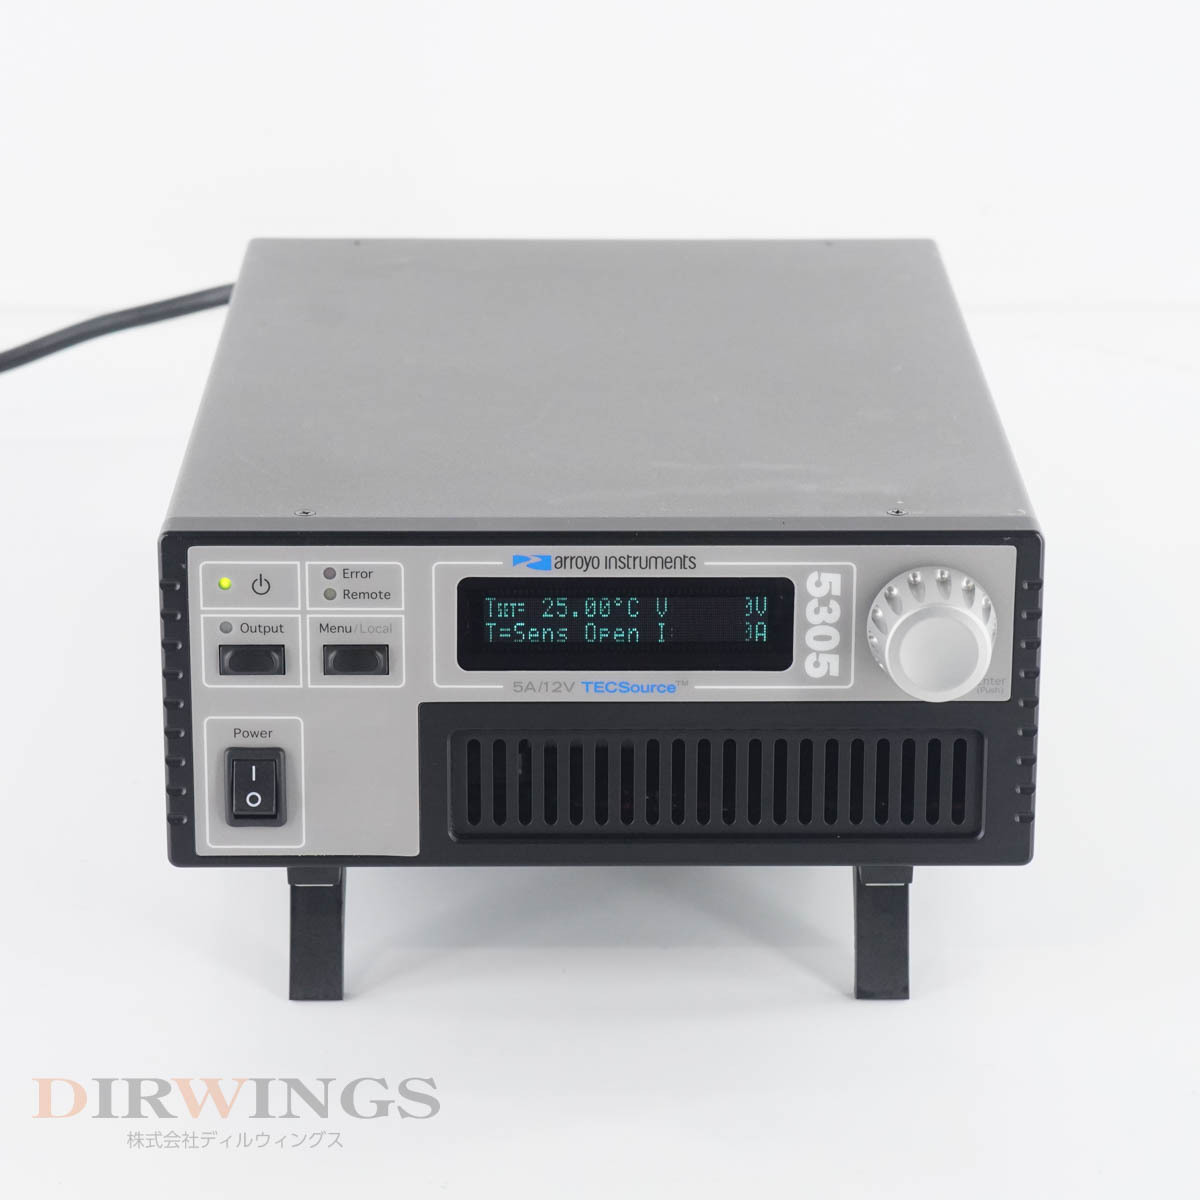 [DW] 8日保証 5305 Arroyo 5A/12V TECSource Temperature Controller 温度コントローラー[05791-0893]の画像3